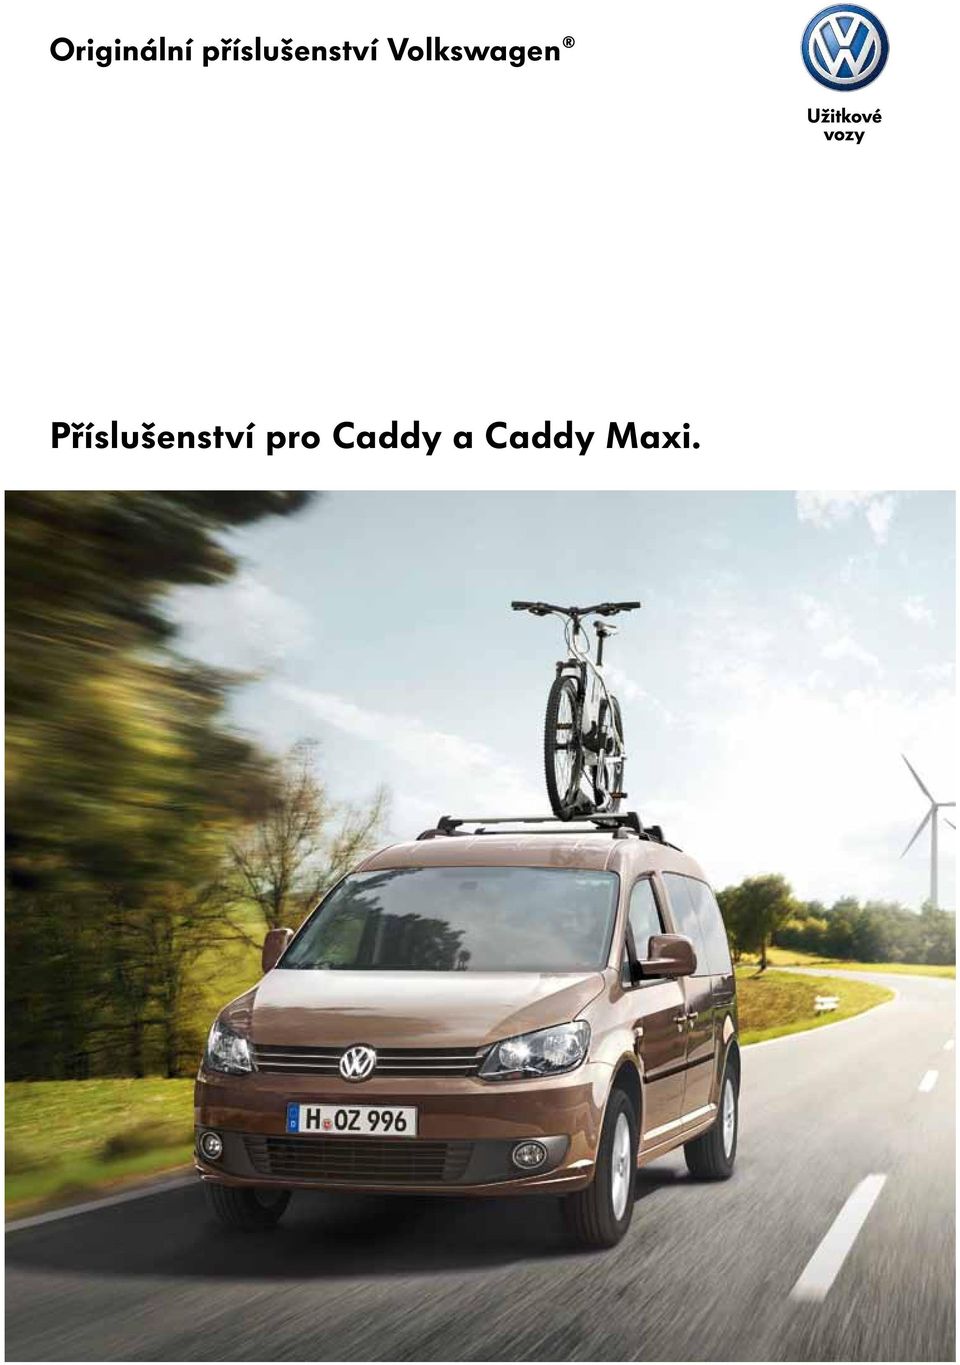 Originální příslušenství Volkswagen. Příslušenství pro Caddy a Caddy Maxi.  - PDF Stažení zdarma